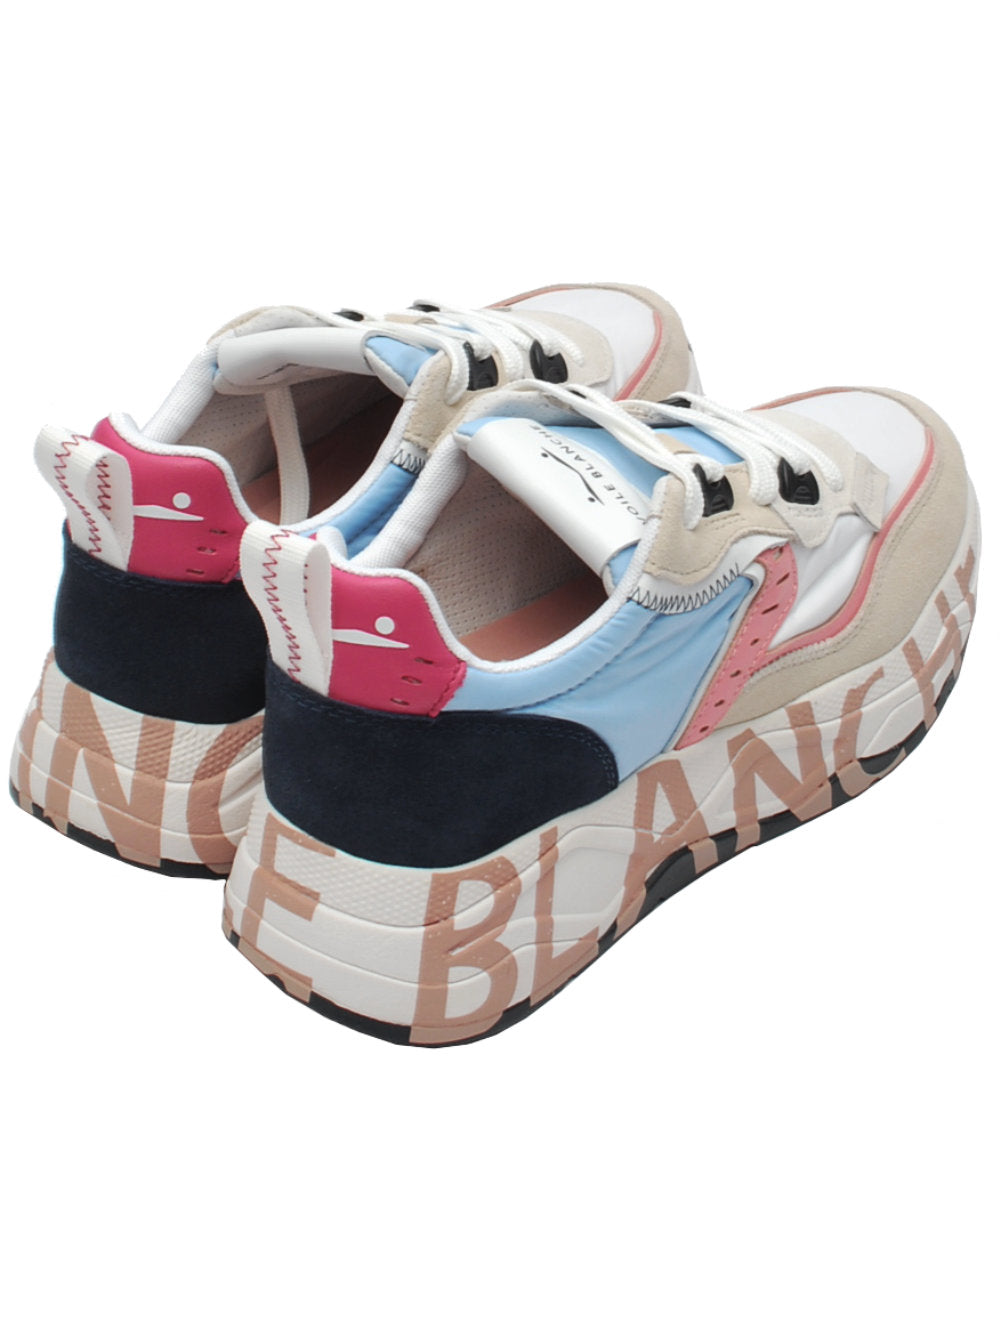 Voile blanche sneaker club105 7475 bianco, azzurro, rosa pe24